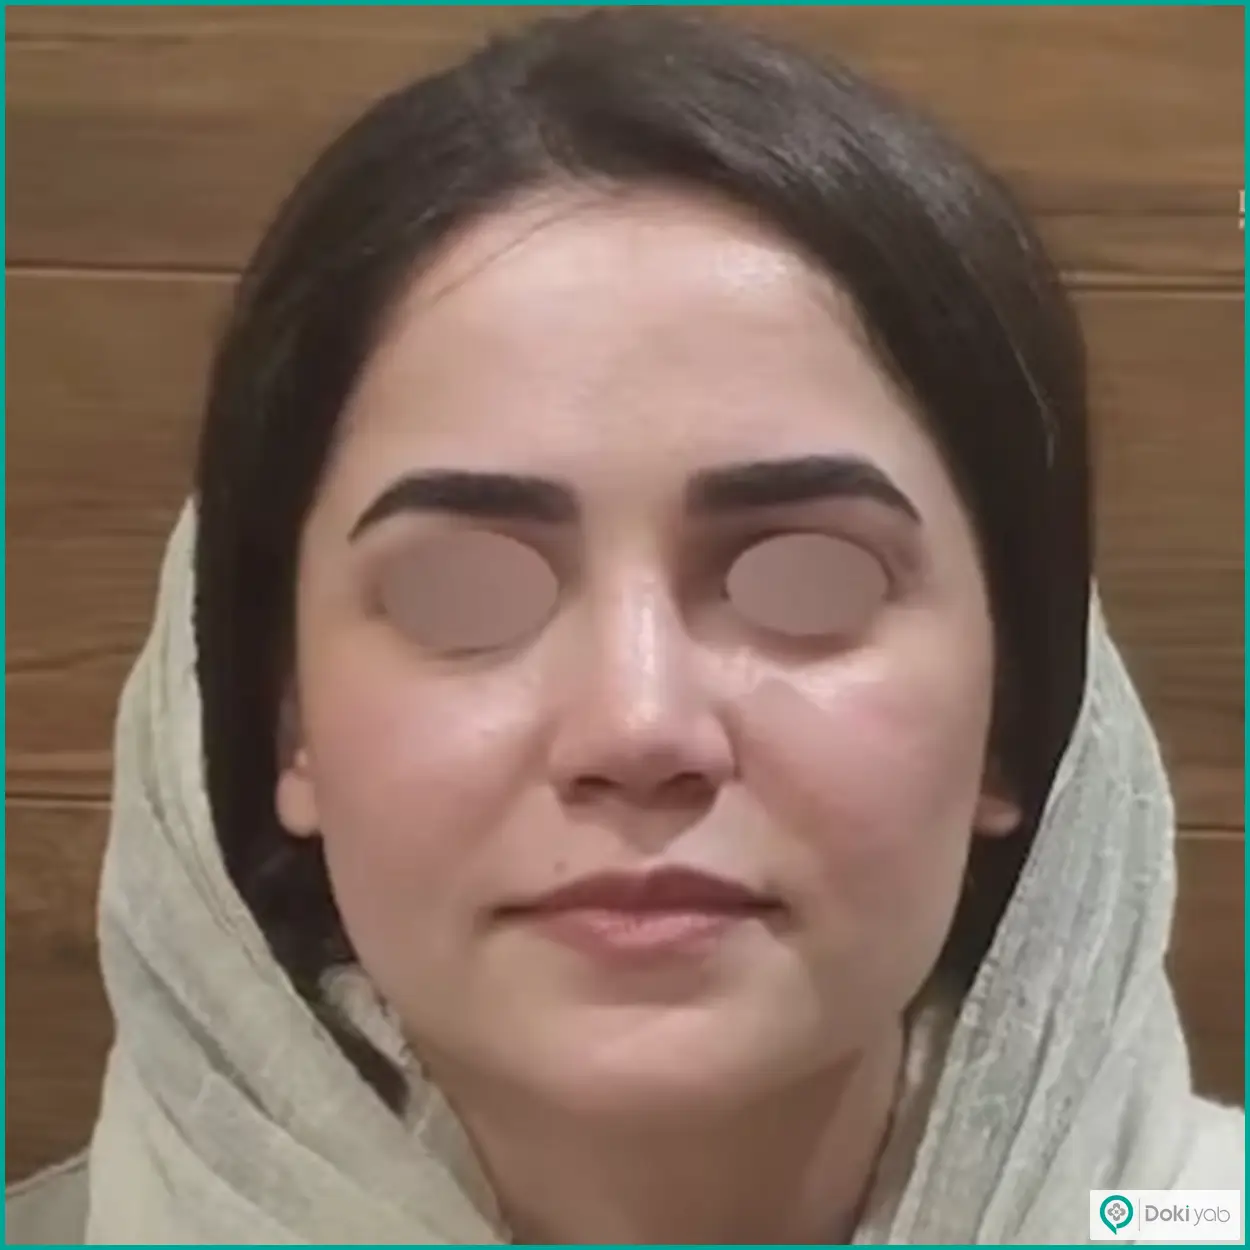 نمونه عمل زیبایی بینی طبیعی دکتر رضا کبودخانی جراح بینی در شیراز